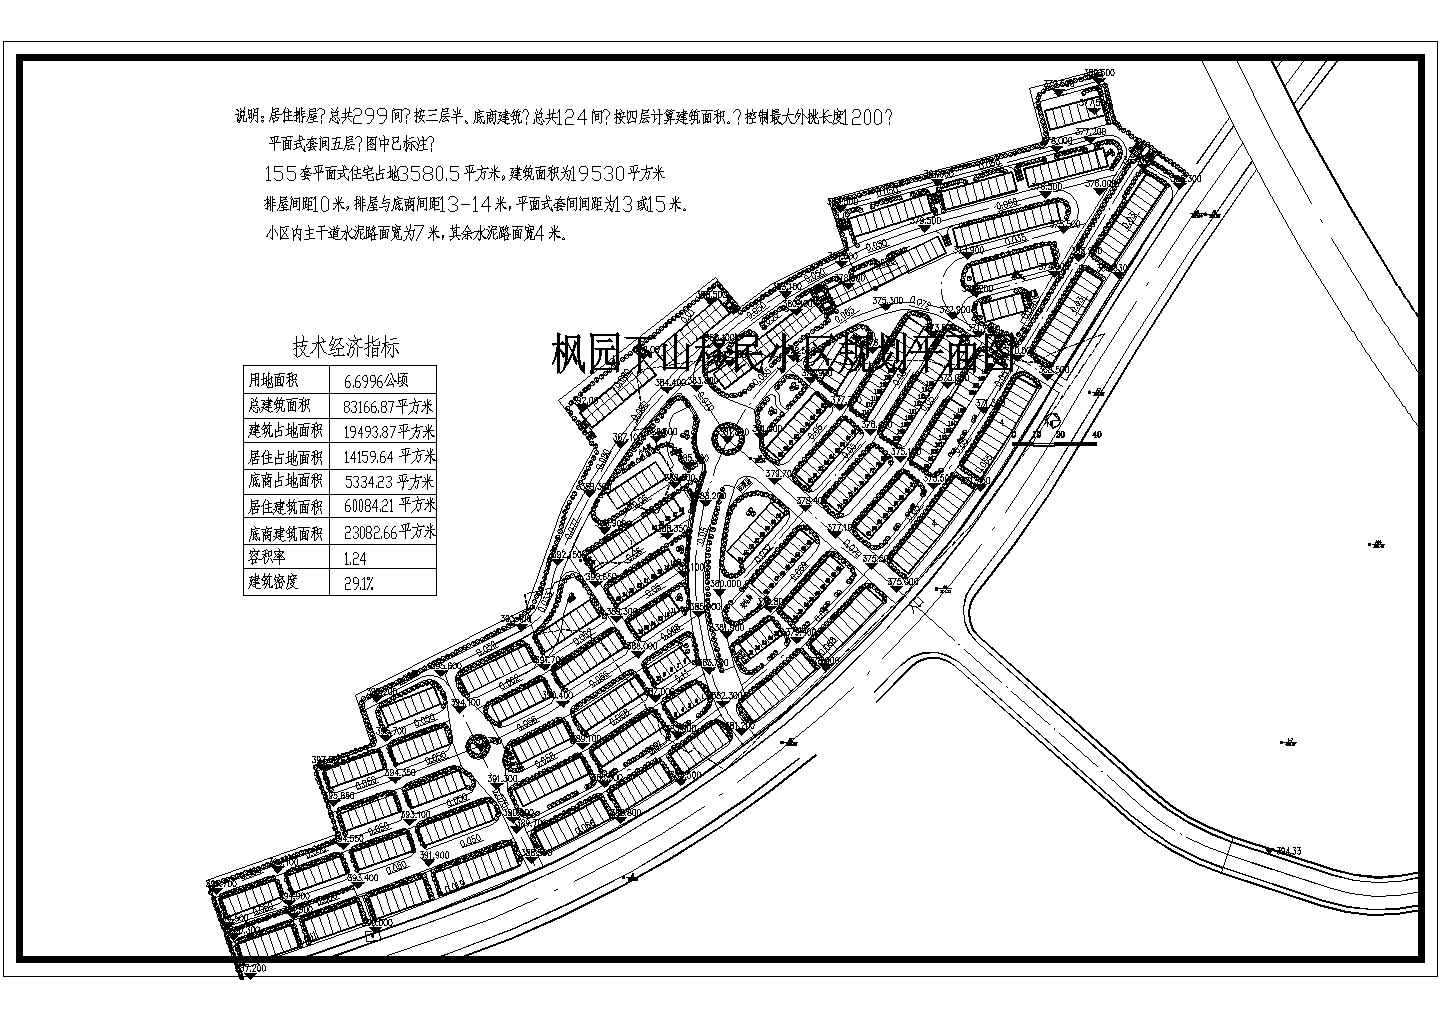 枫园下山移民小区建筑规划平面总图